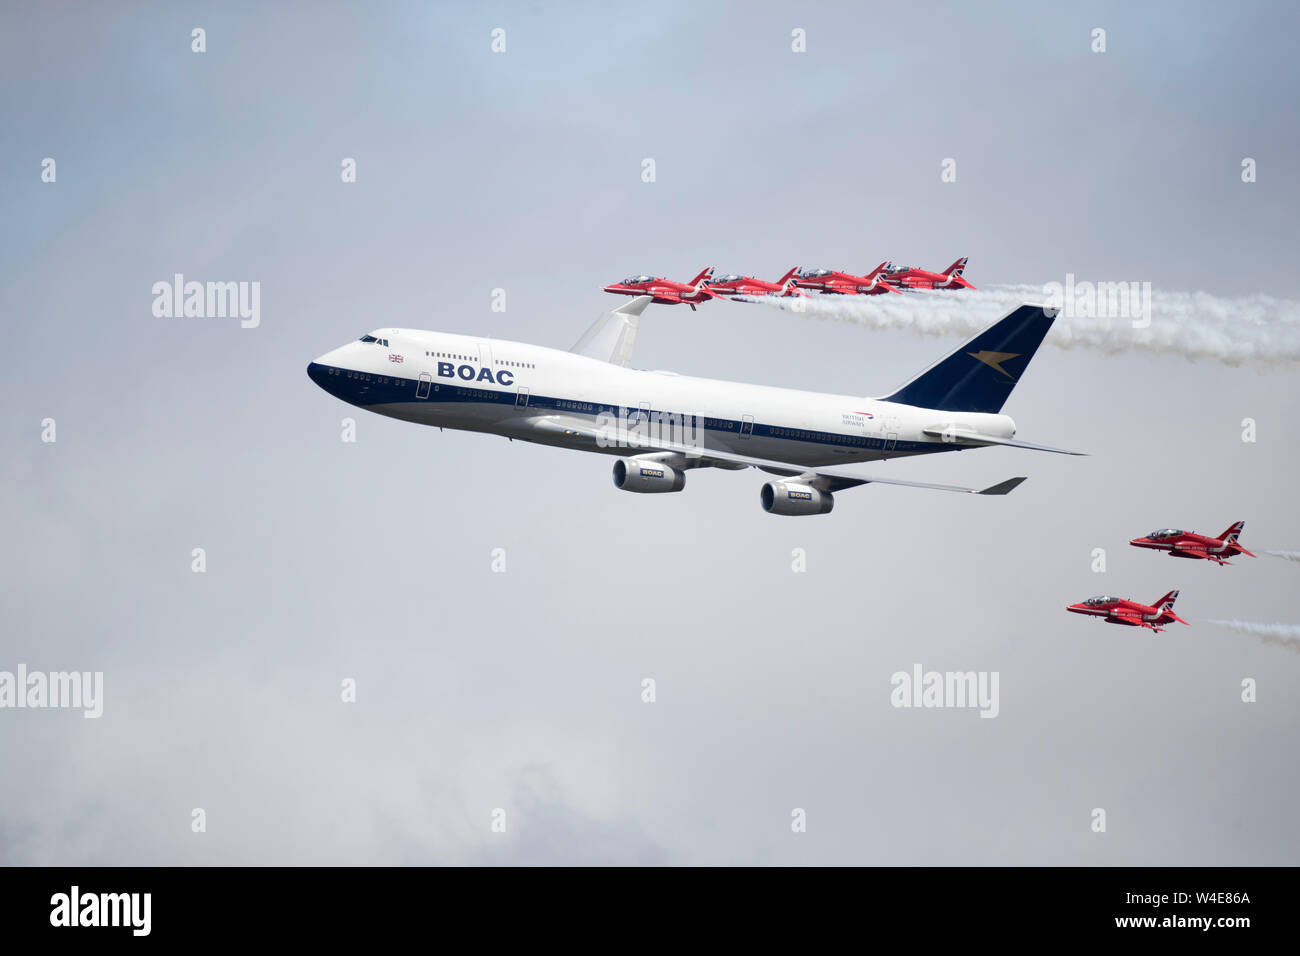 Boeing 747-436 en avion avec les flèches rouges à l'air show 2019 RIAT Fairford, Gloucestershire, Royaume-Uni commémorant le 100e anniversaire de la BOAC Banque D'Images